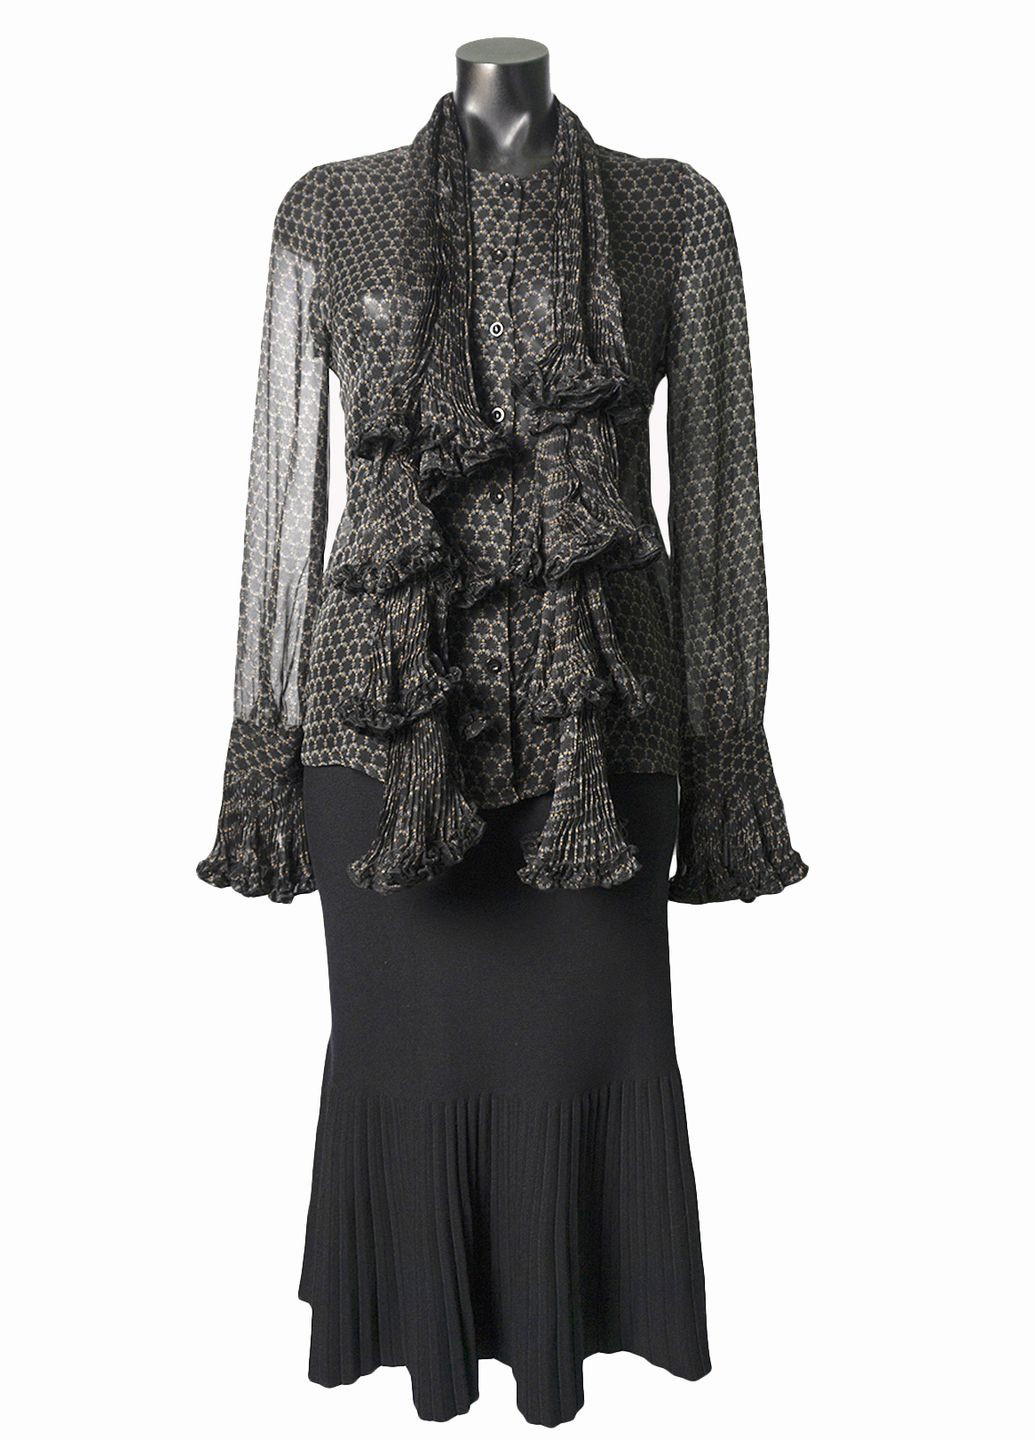 Черная демисезонная женская шифоновая блуза с шарфом lw-116679-2 черный Forza Viva